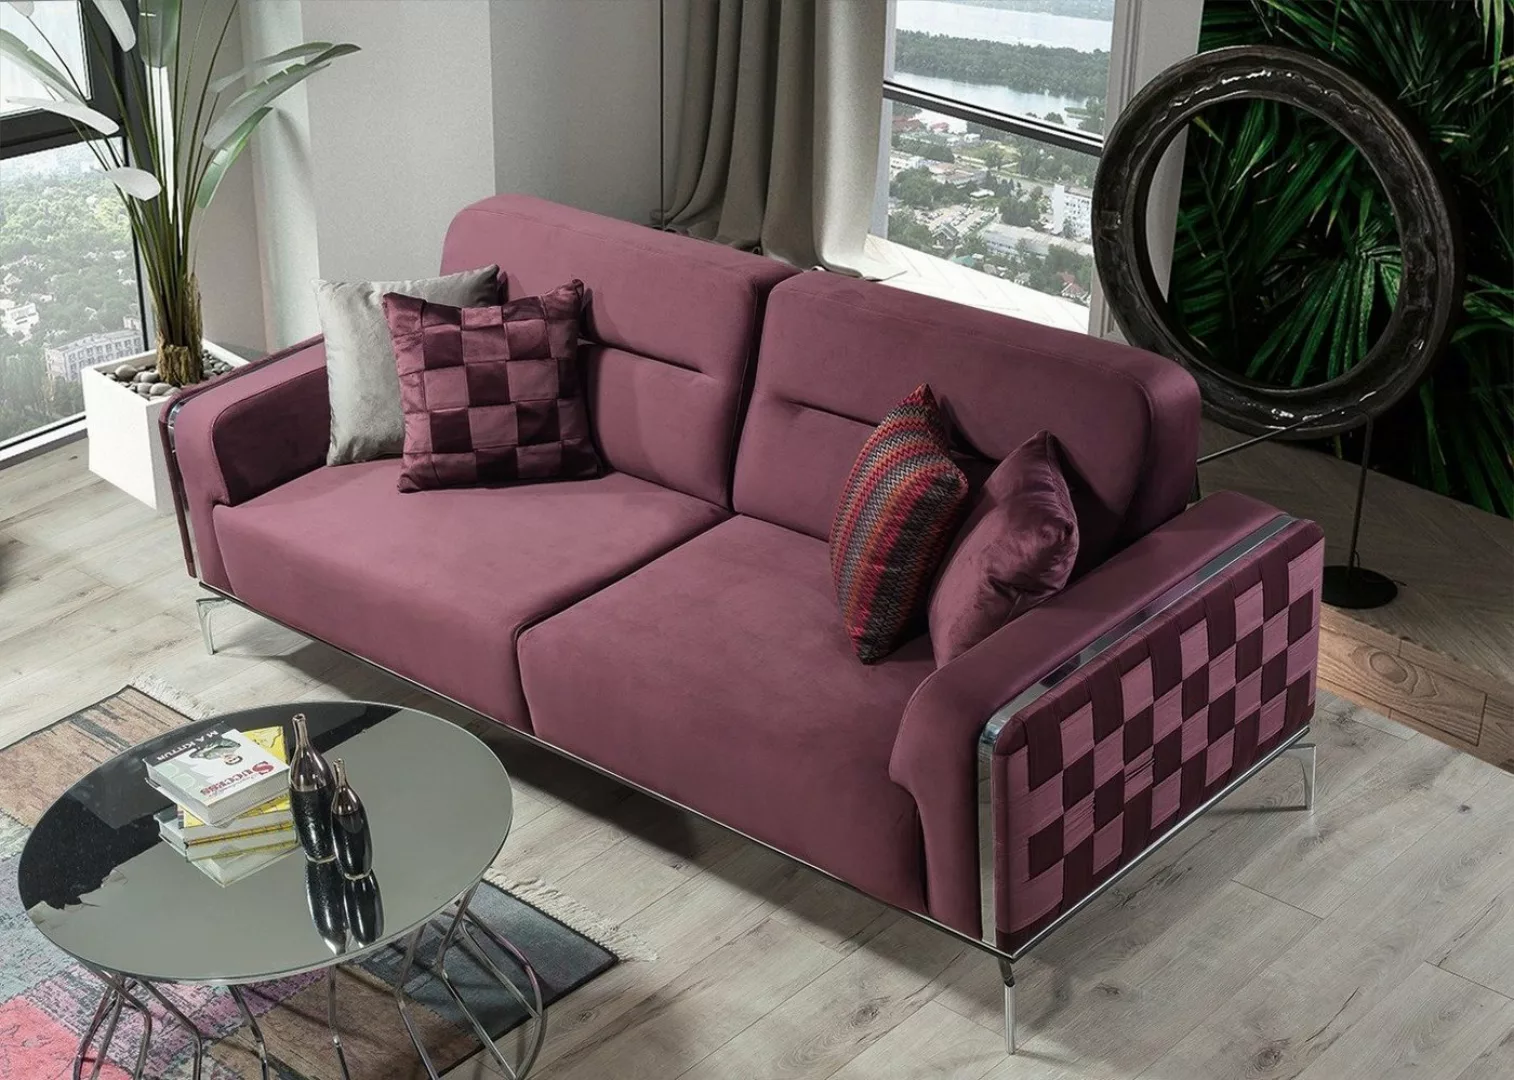 Villa Möbel Sofa Check, 1 Stk. 2-Sitzer, Quality Made in Turkey, pflegeleic günstig online kaufen